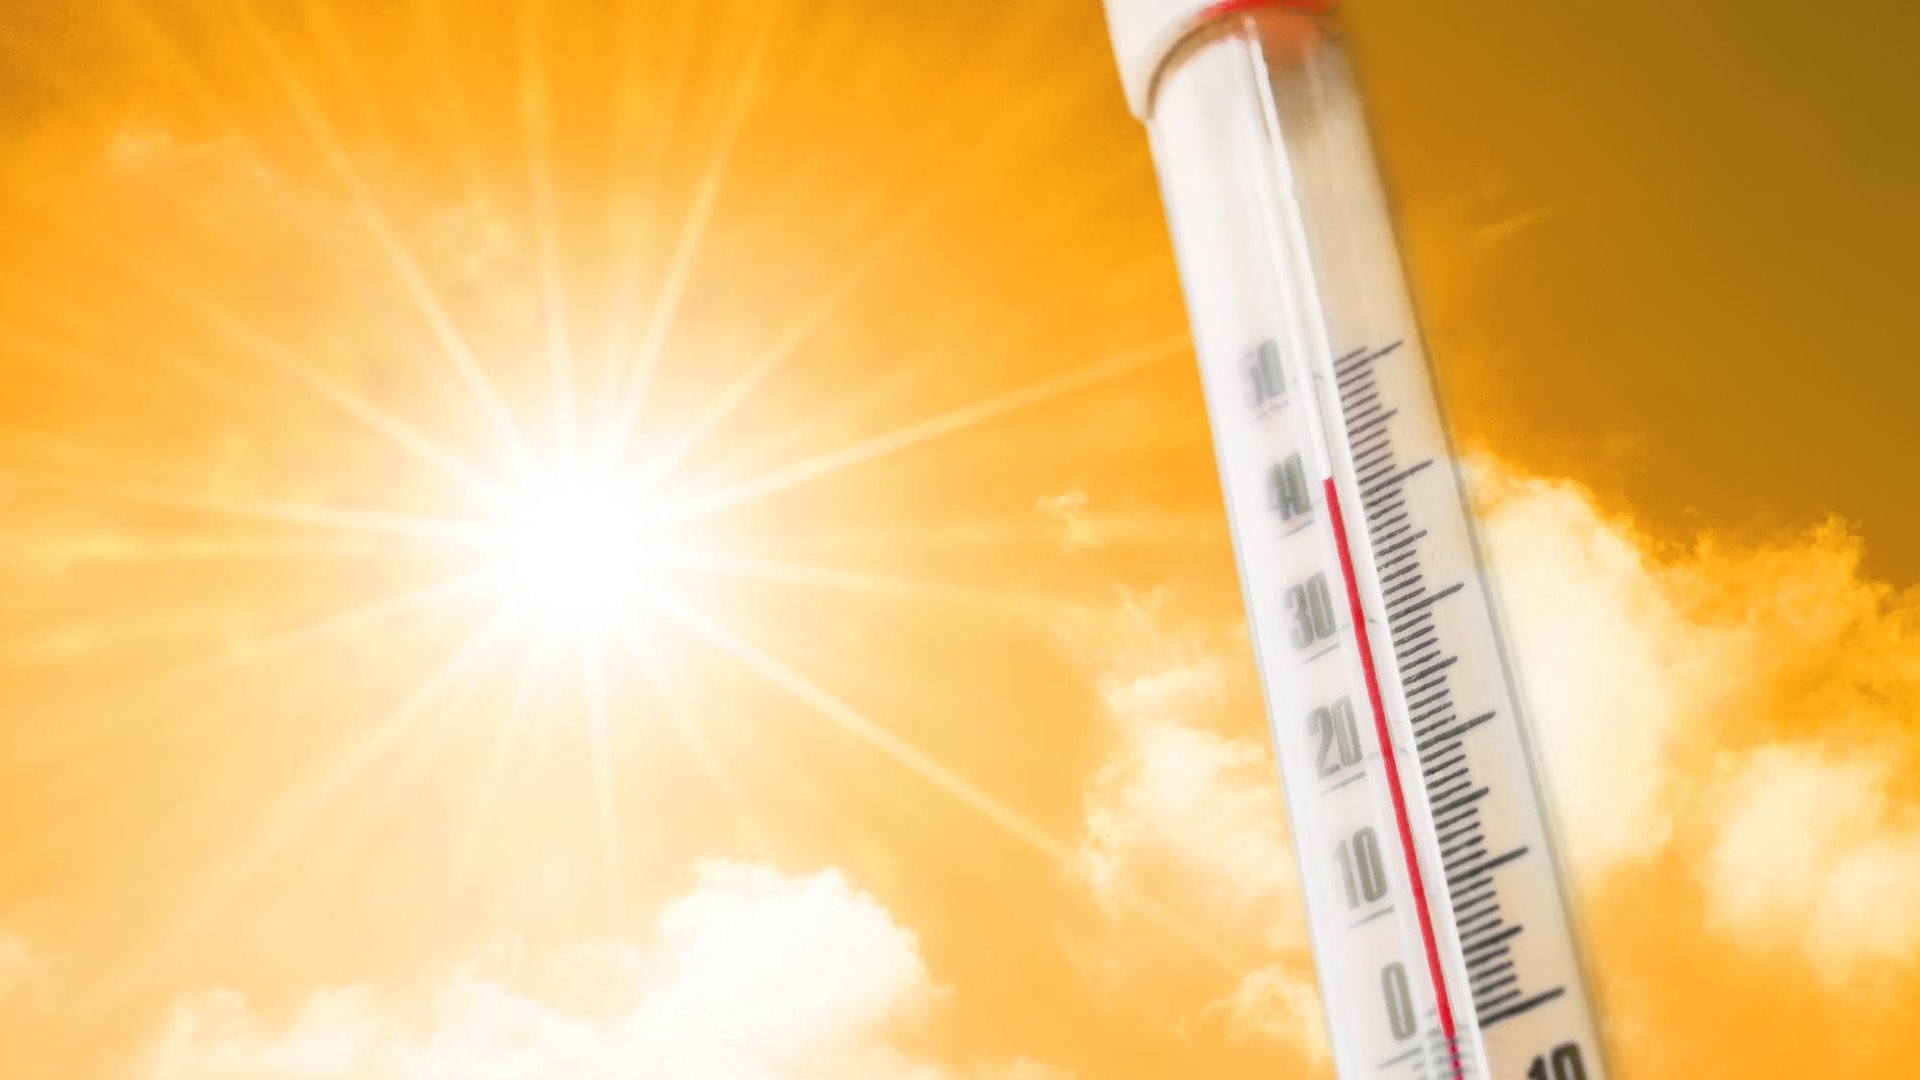 Eylül ayının küresel sıcaklığı rekorları alt üst etti, uzmanlar alarma geçti